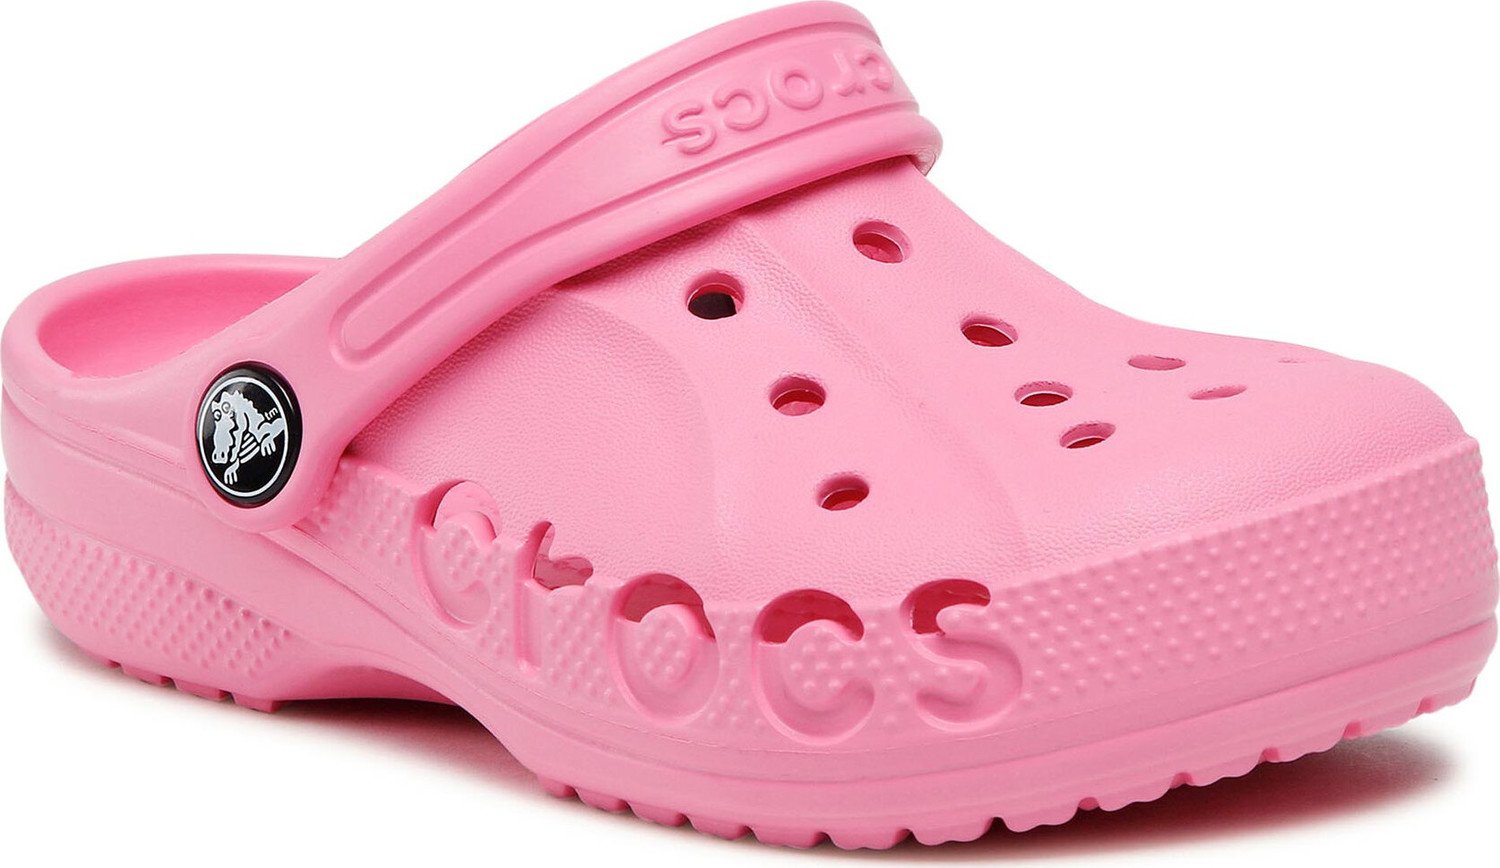 Nazouváky Crocs 207013-669 Pink